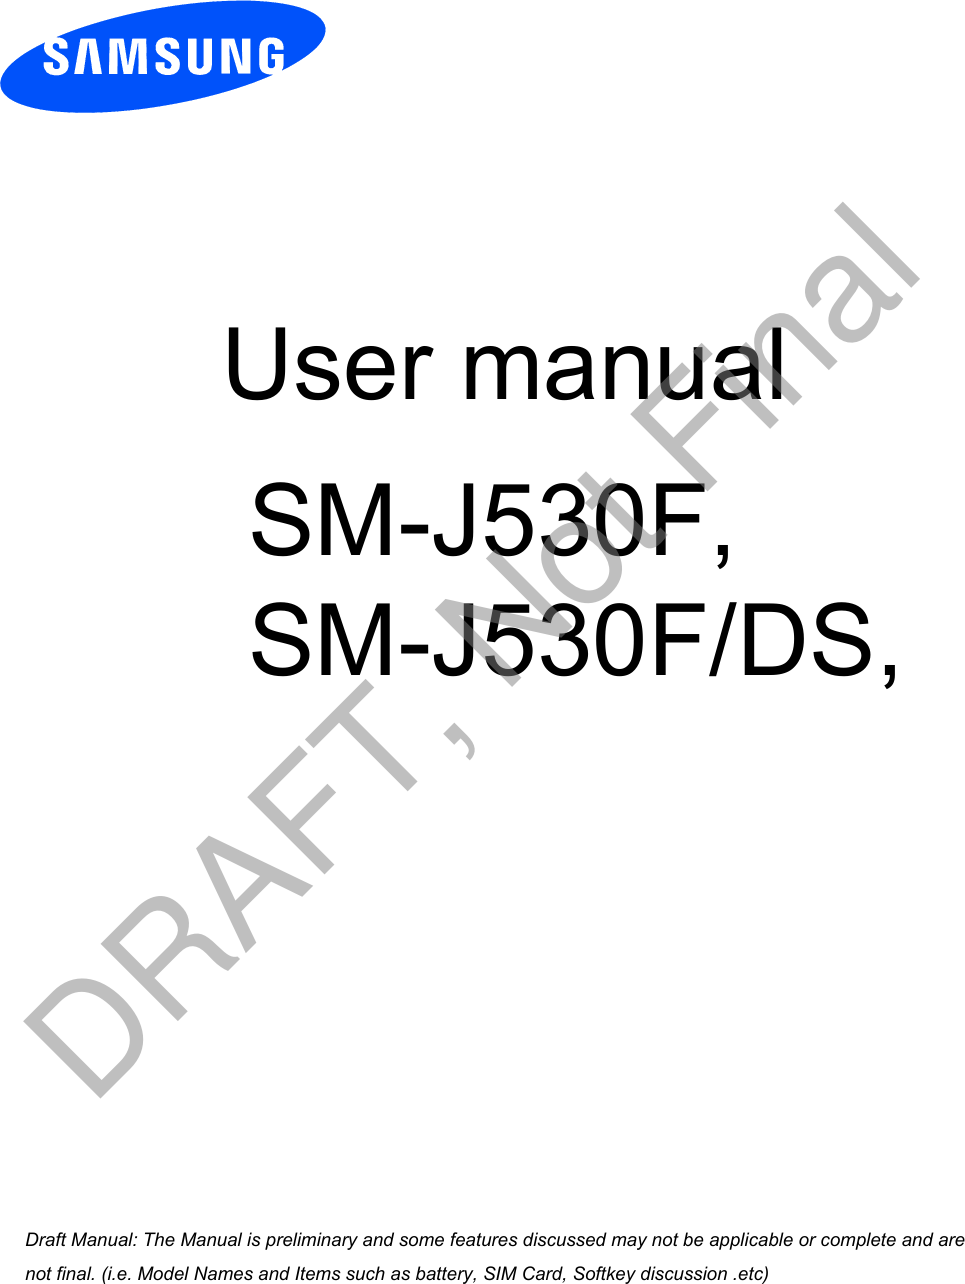  User manual SM-J530F,SM-J530F/DS, a ana  ana  na and  a dd a n  aa   and a n na  d a and   a a  ad  dn DRAFT, Not Final